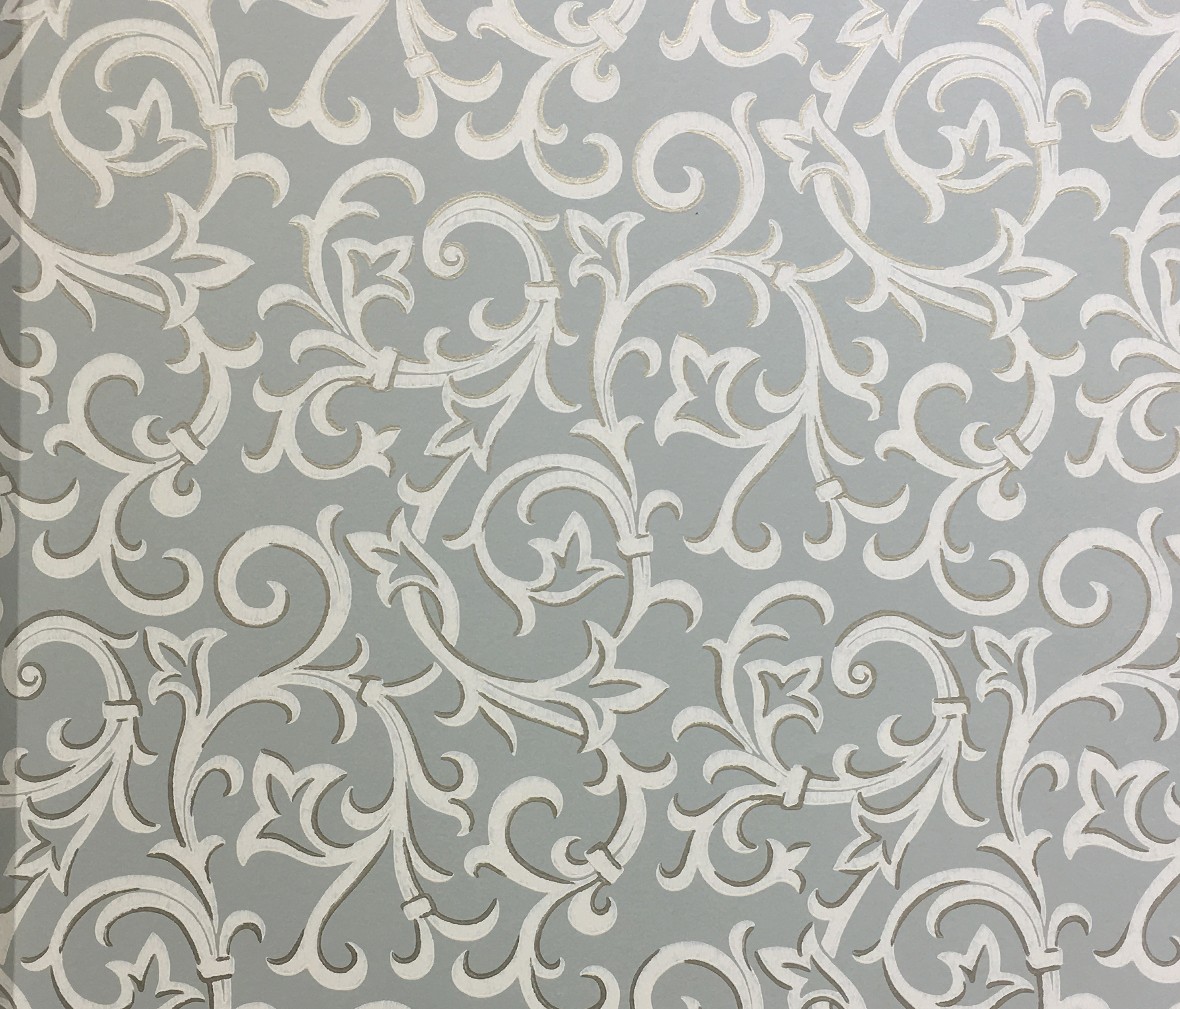 格莱美壁纸 艾文顿系列 1602-103-02型号进口环保无纺布墙纸 细节展示